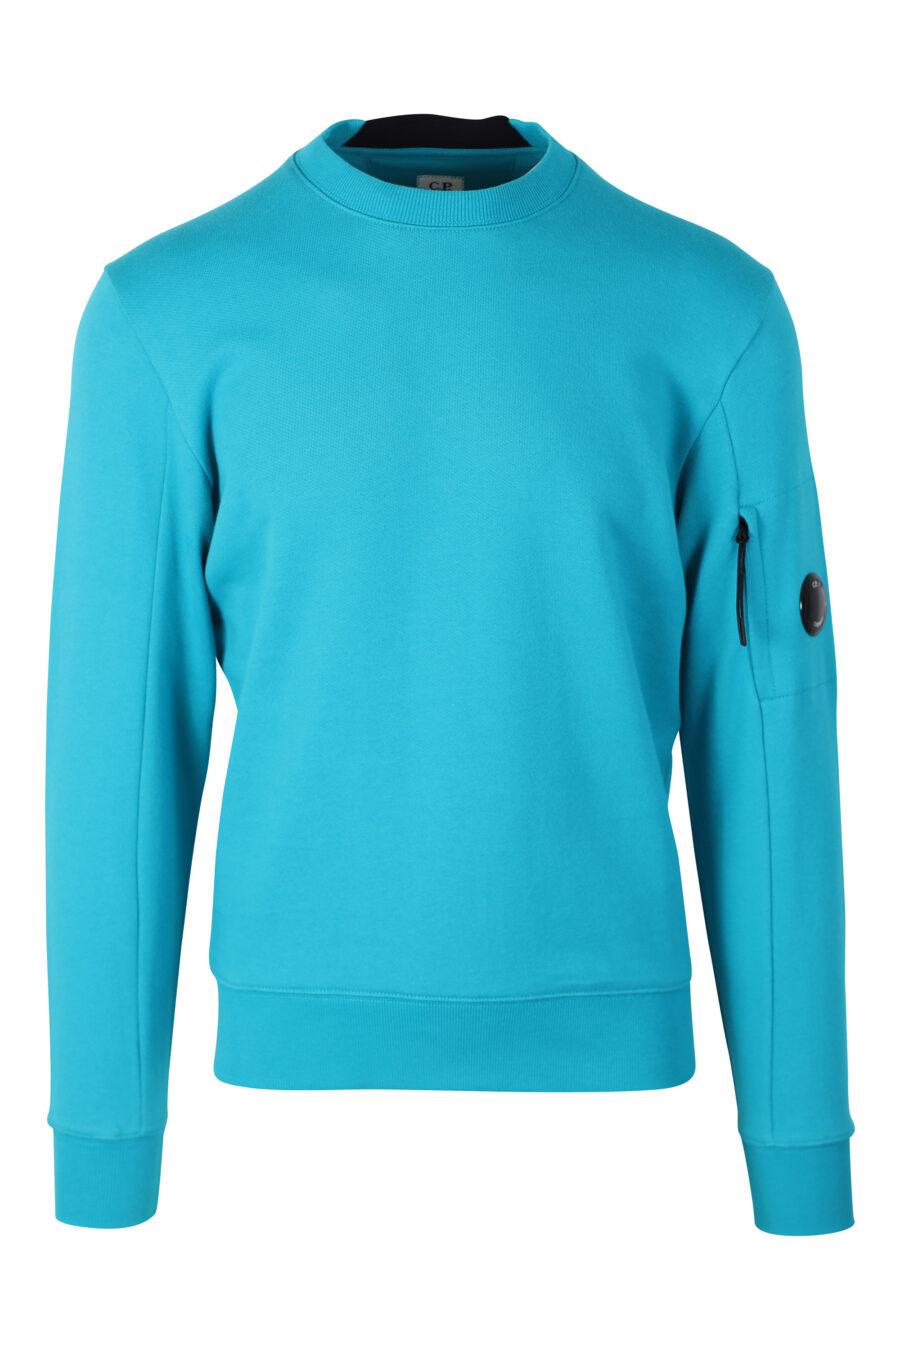 Sweat-shirt turquoise avec mini-logo circulaire sur le côté - IMG 2400